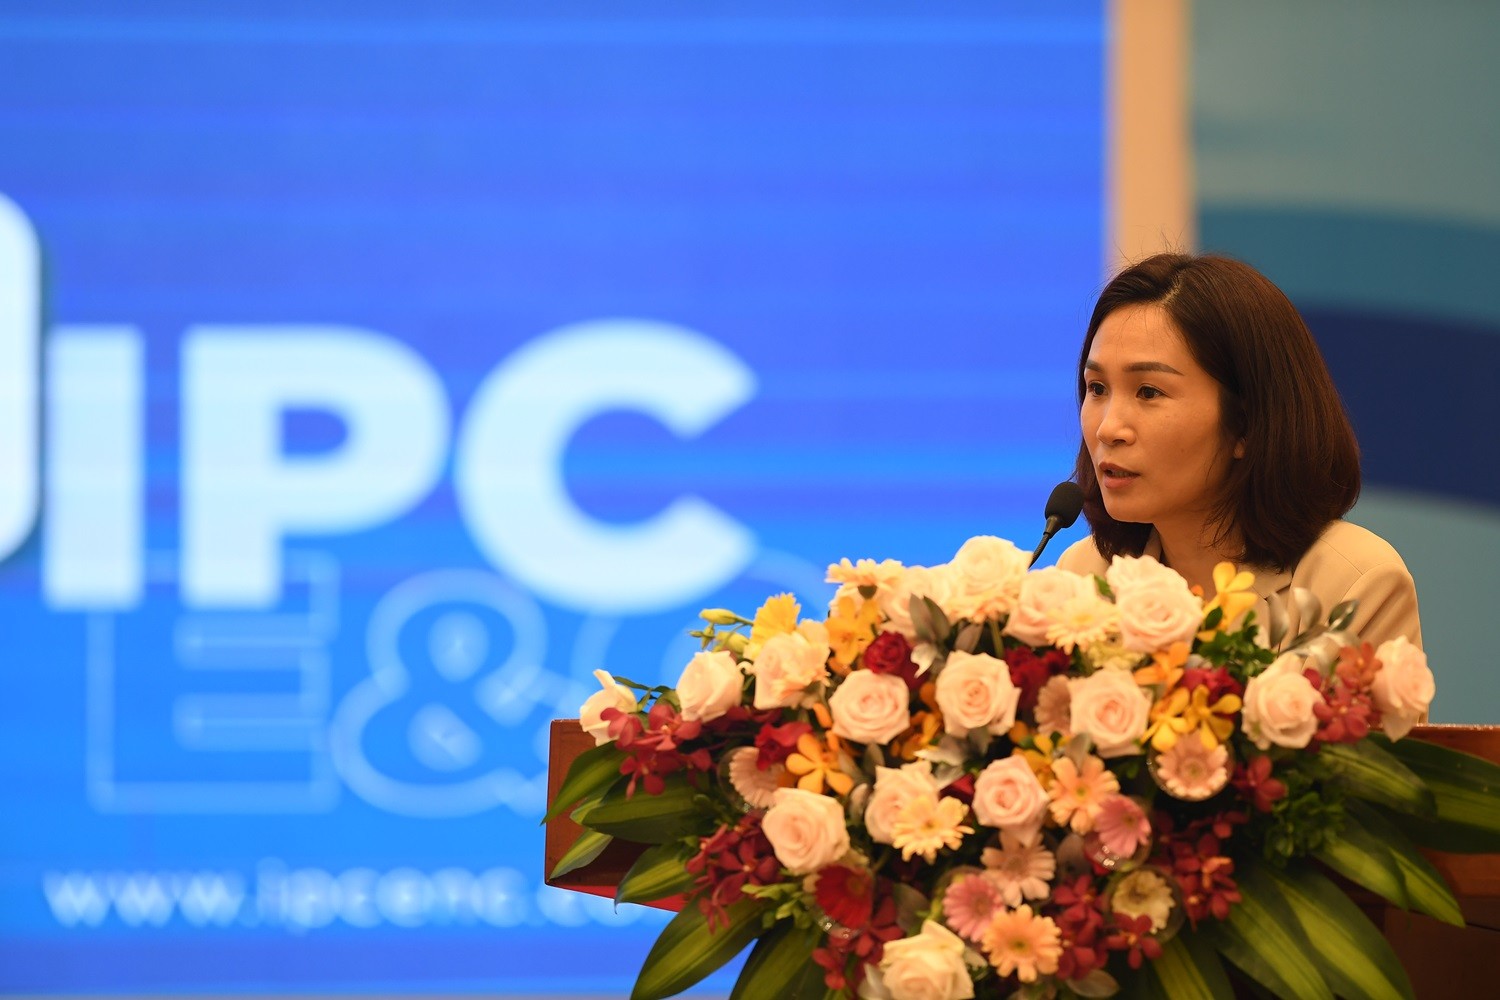 Trung hòa carbon 2050 - Cơ chế cho các dự án điện sạch ở Việt Nam